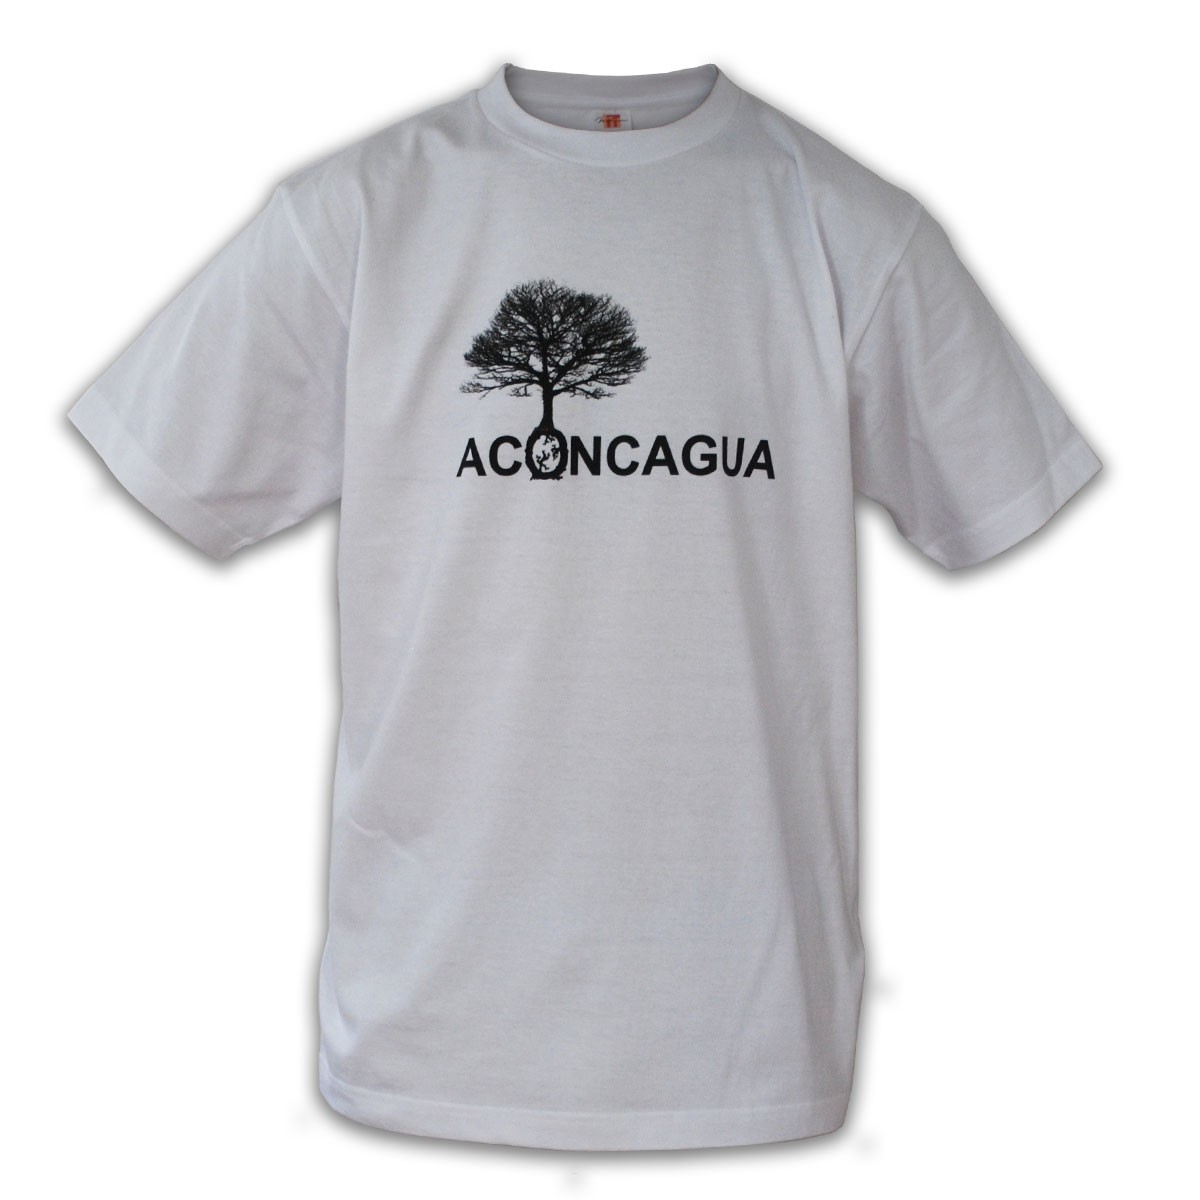 半袖 5.6oz 木のプリント アコンカグア コットン メンズ レディース Tシャツ 